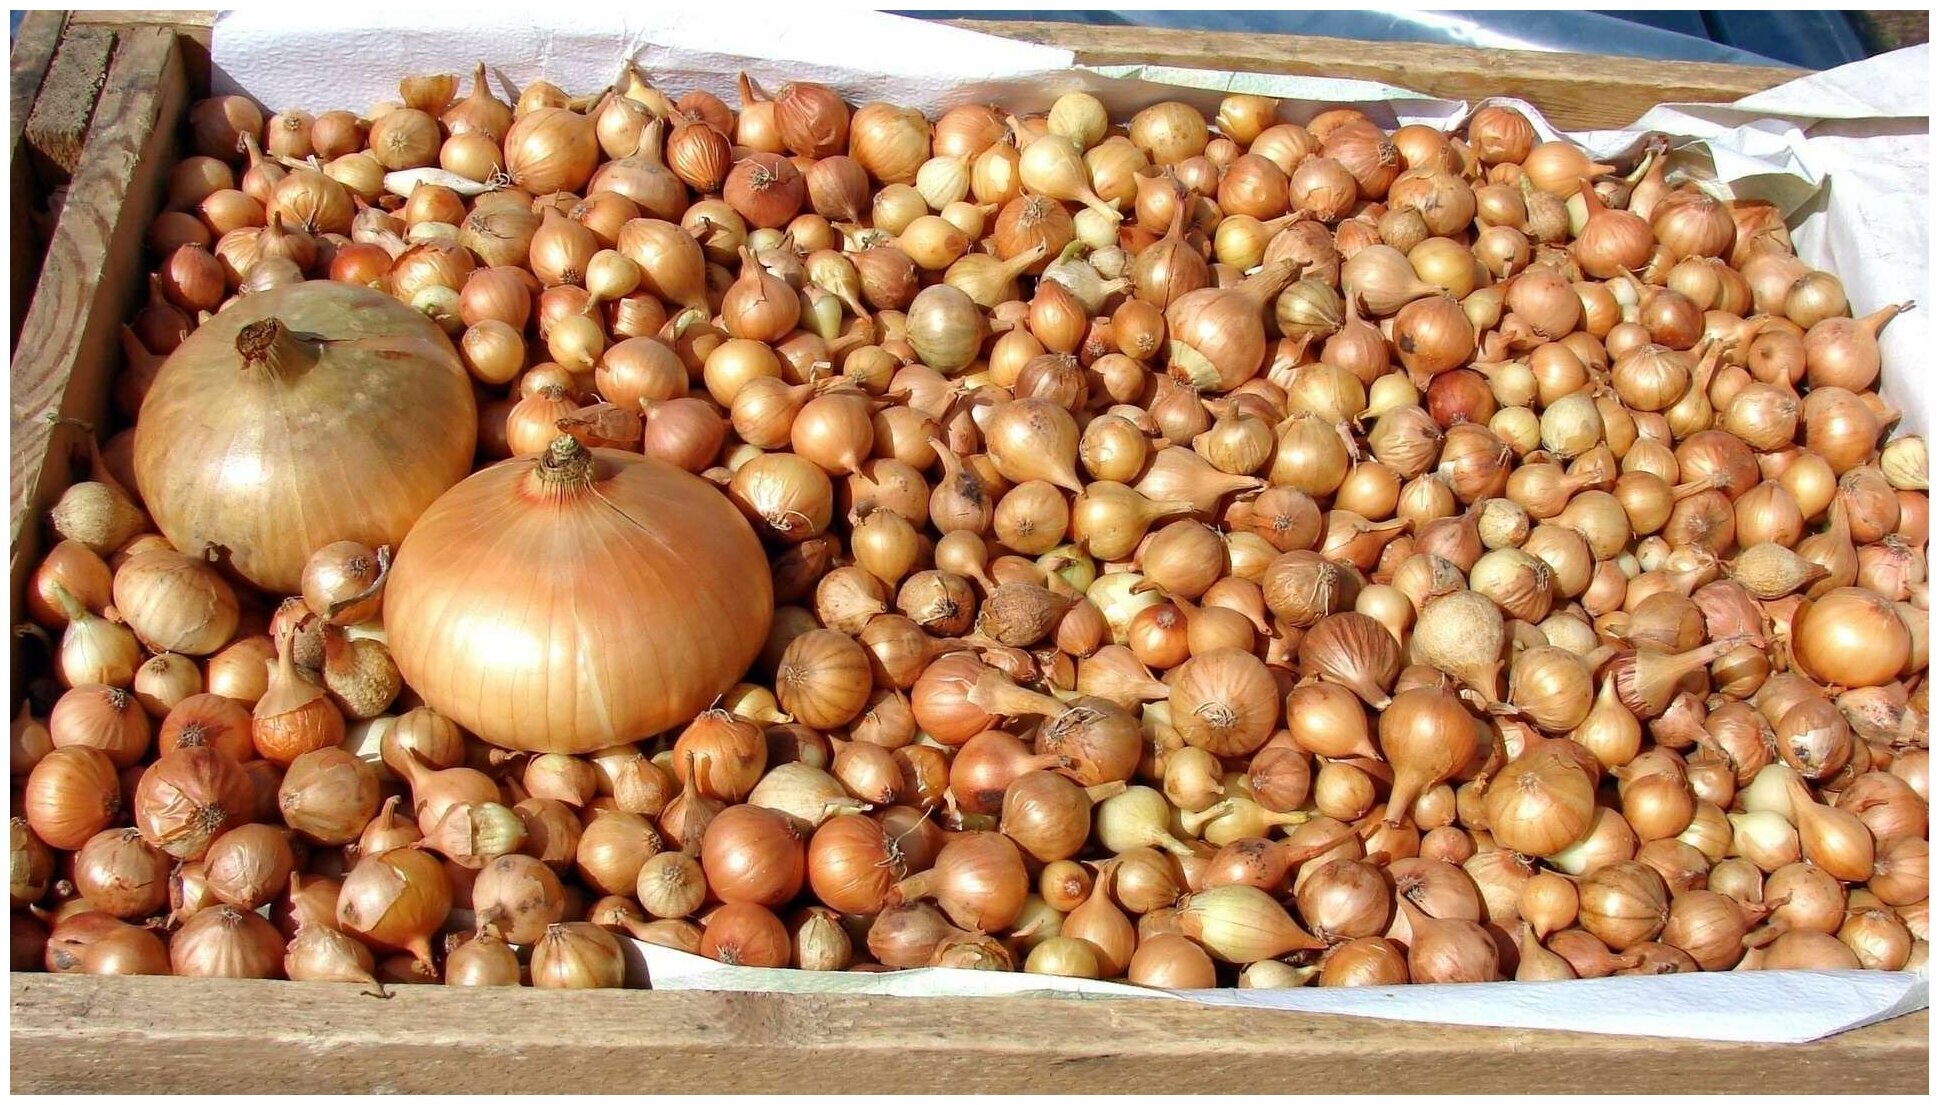 Лук-севок сорта "Штутгартер Ризен" (500 гр): для посева в саду или огороде; отменная лежкость собранного урожая; высокое содержание витамина С